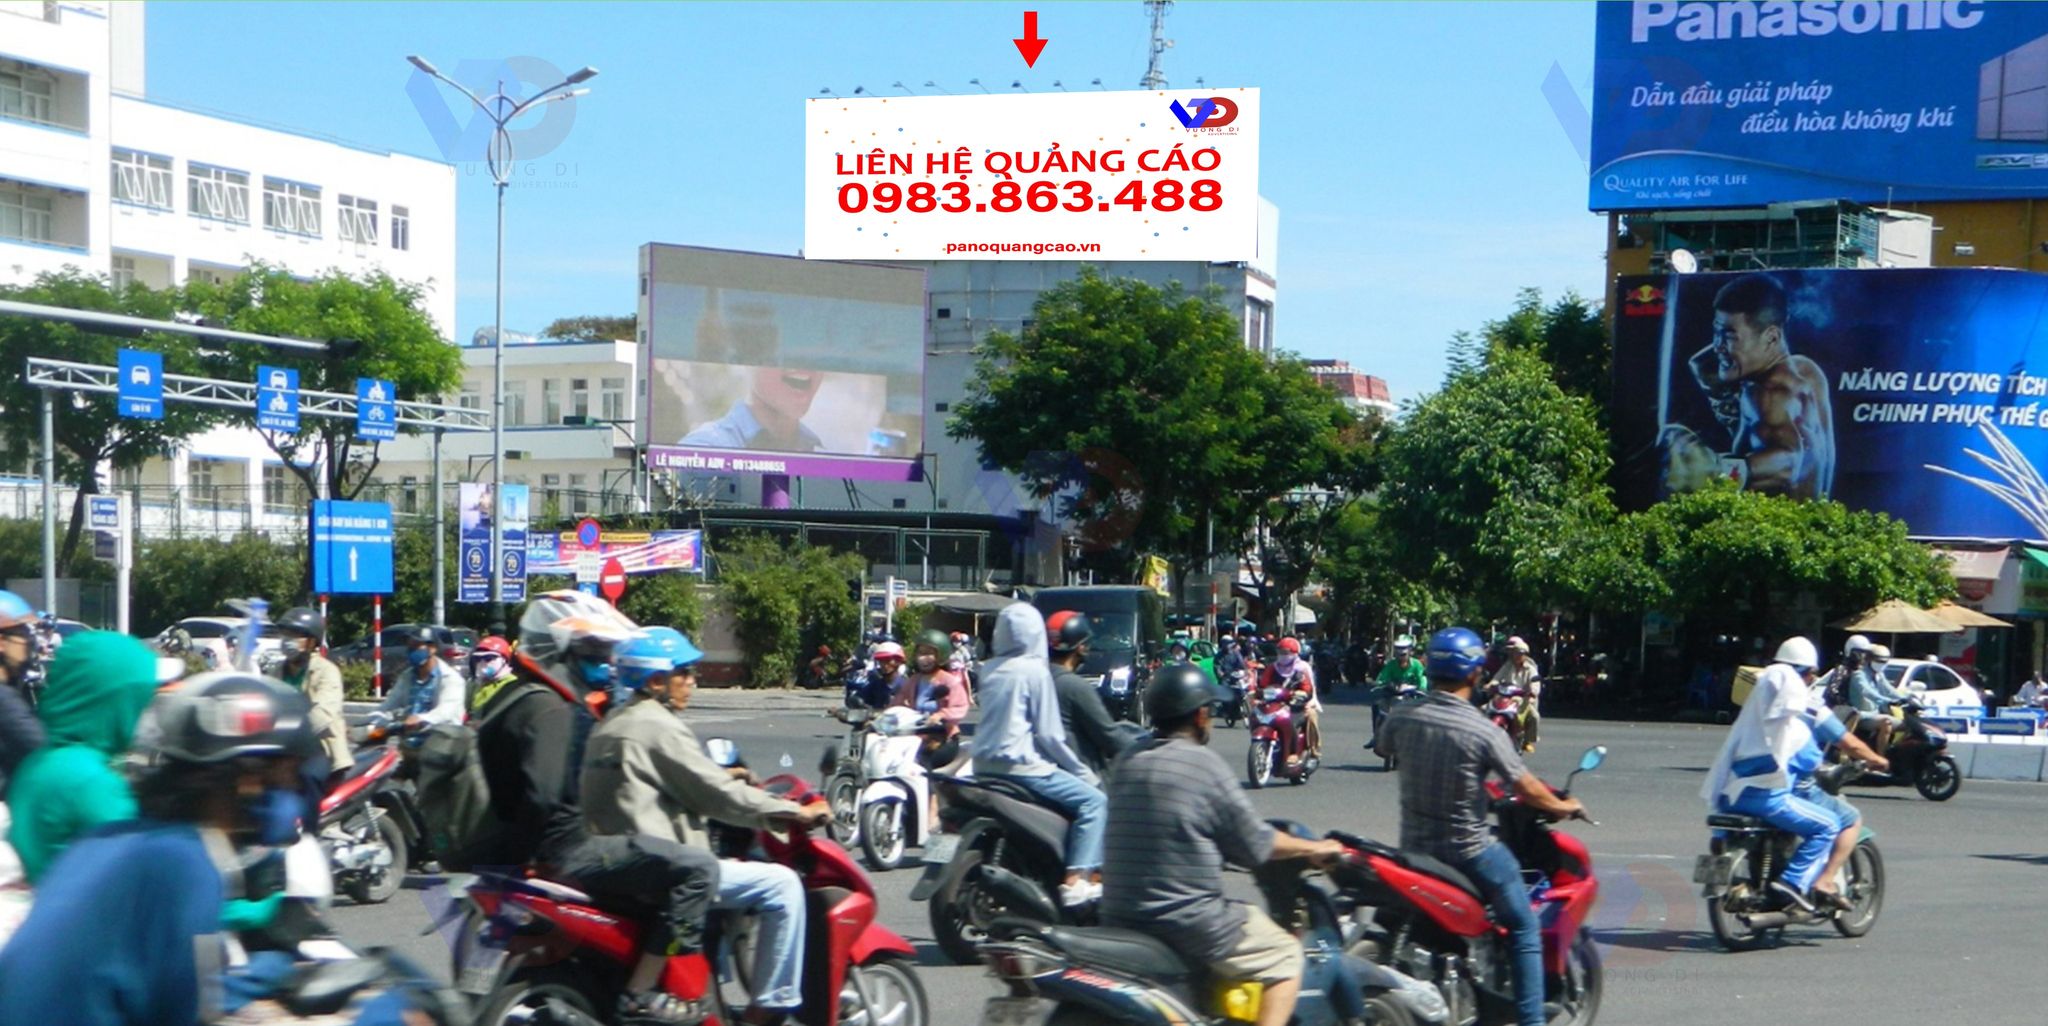 Bảng quảng cáo tại Ngã năm Hoàng Diệu, Hải Châu, tỉnh Đà Nẵng